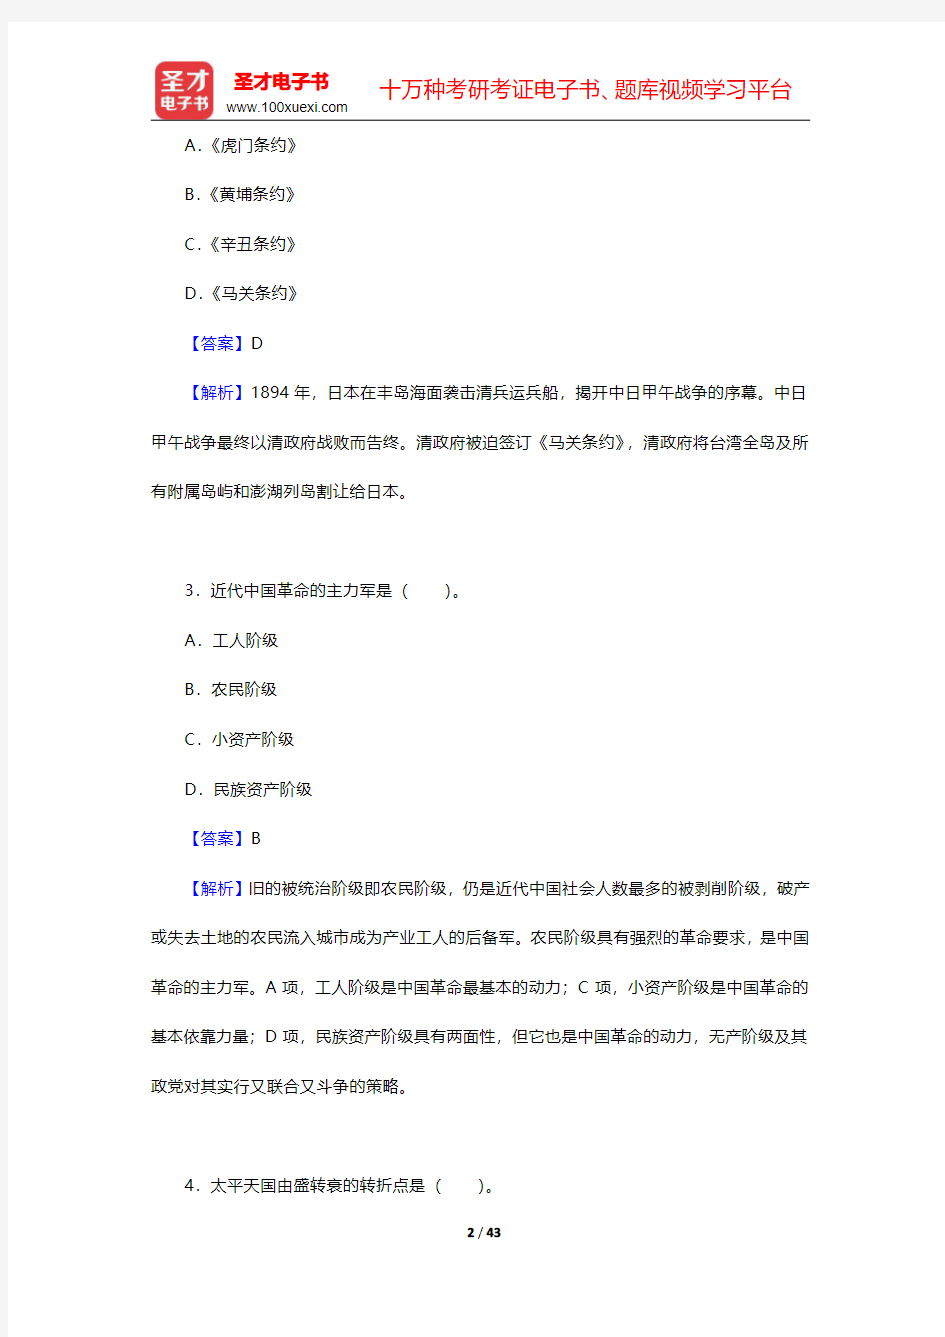 全国自考《中国近代史纲要》(2015年版)配套题库-模拟试题(圣才出品)